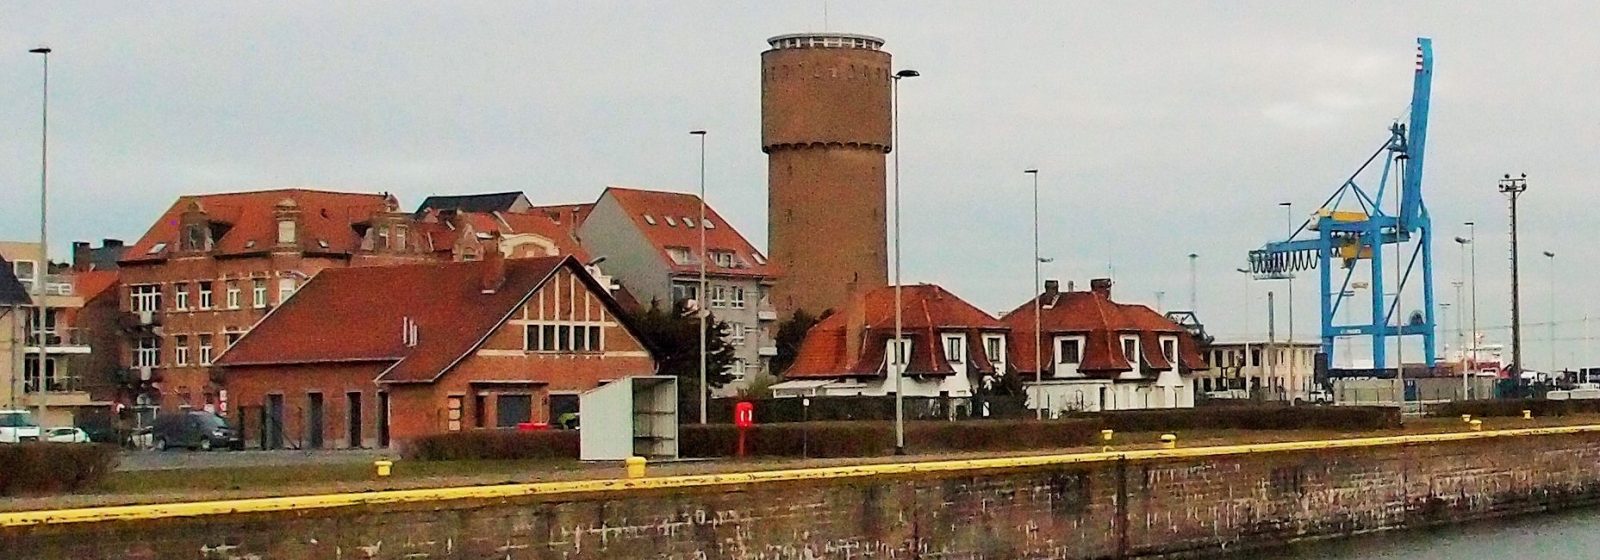 Woningen naast Visartsluis Zeebrugge